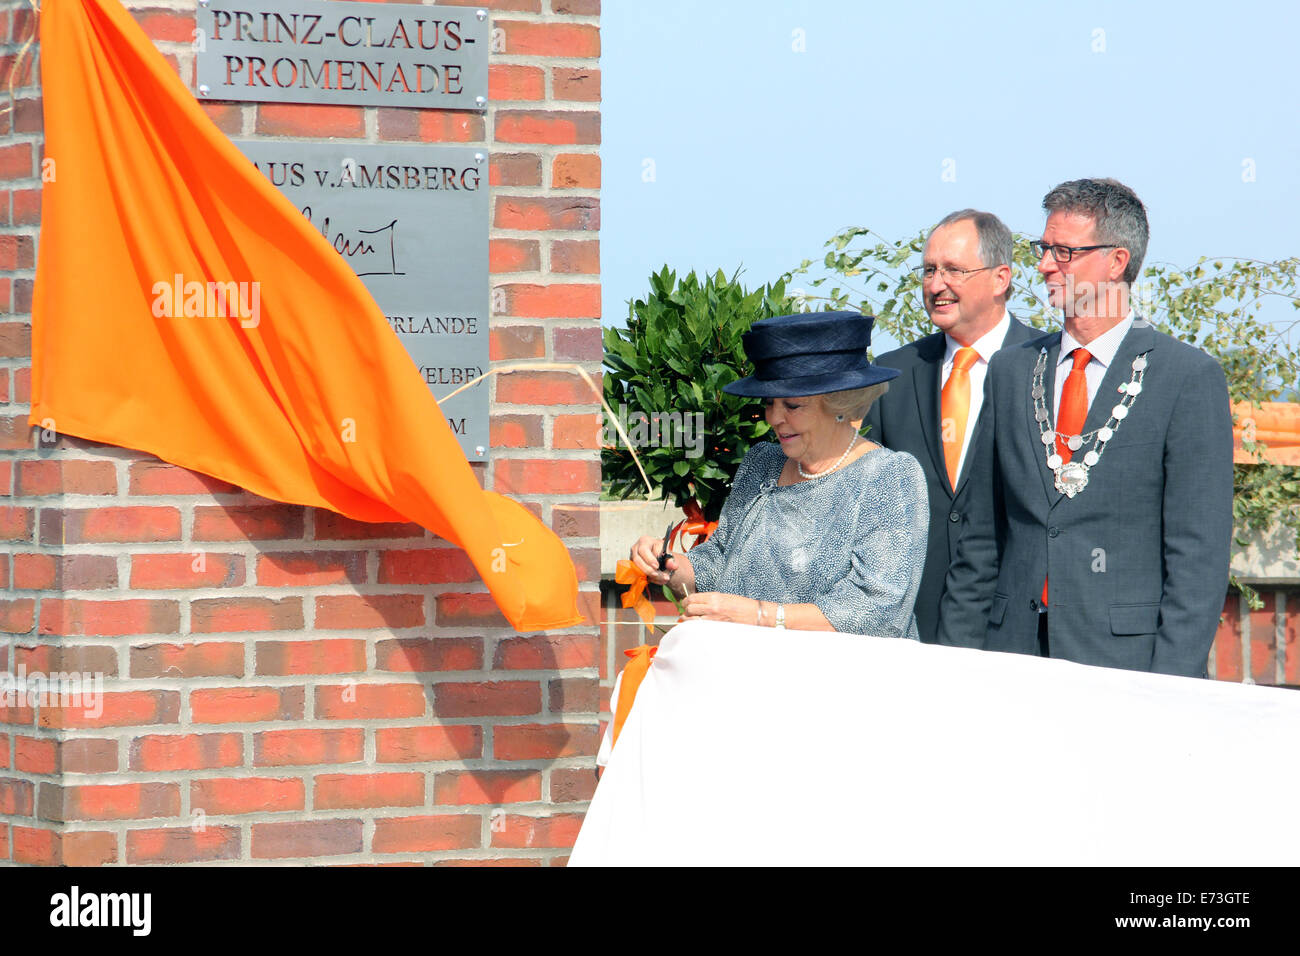 La princesse Beatrix des Pays-Bas, accompagné par Jürgen Meyer (C), et le maire de Holger Mertins (R), dévoile une plaque-Prinz-Claus inscrit 'promenade' à Hitzacker (Basse-Saxe), Allemagne, 5 septembre 2014. Le prince Claus von Amsberg, Beatrix du défunt mari, est né à Hitzacker. Photo : Rouven/apd brute Banque D'Images